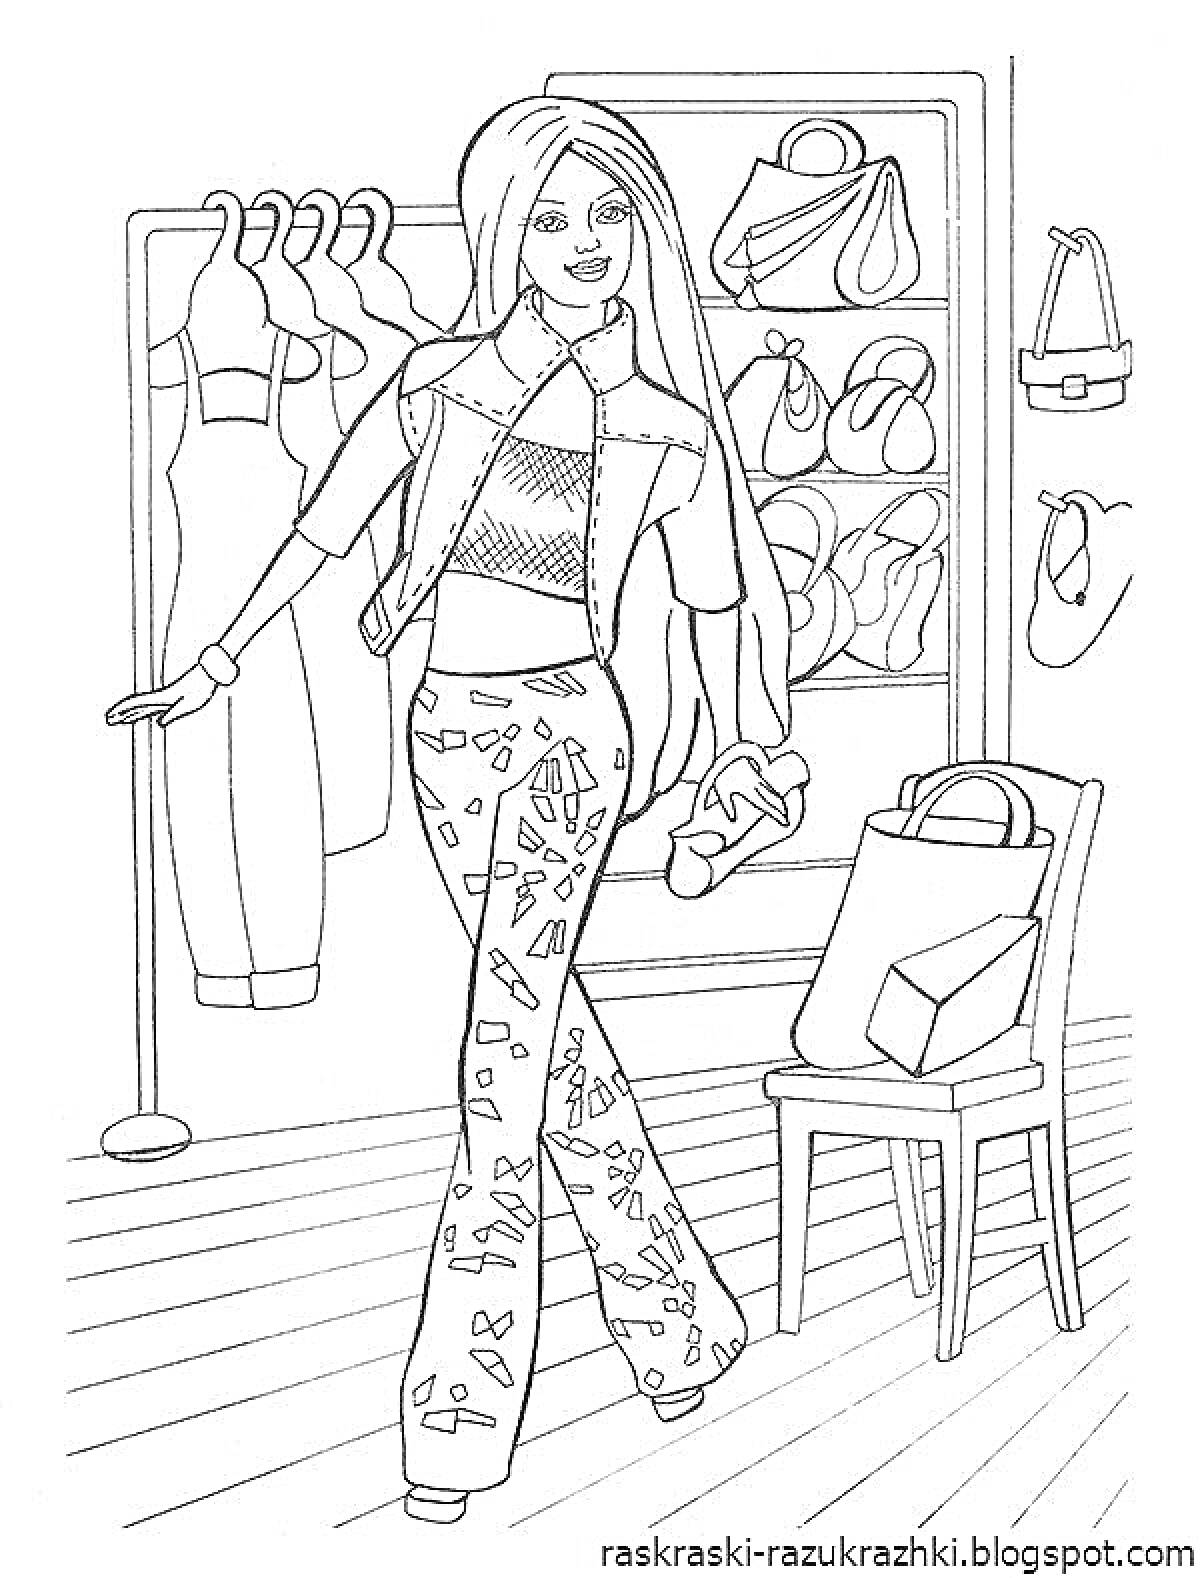 Раскраска Барби в гардеробе с одеждой и аксессуарами, в руках обувь, на заднем фоне полки с сумками